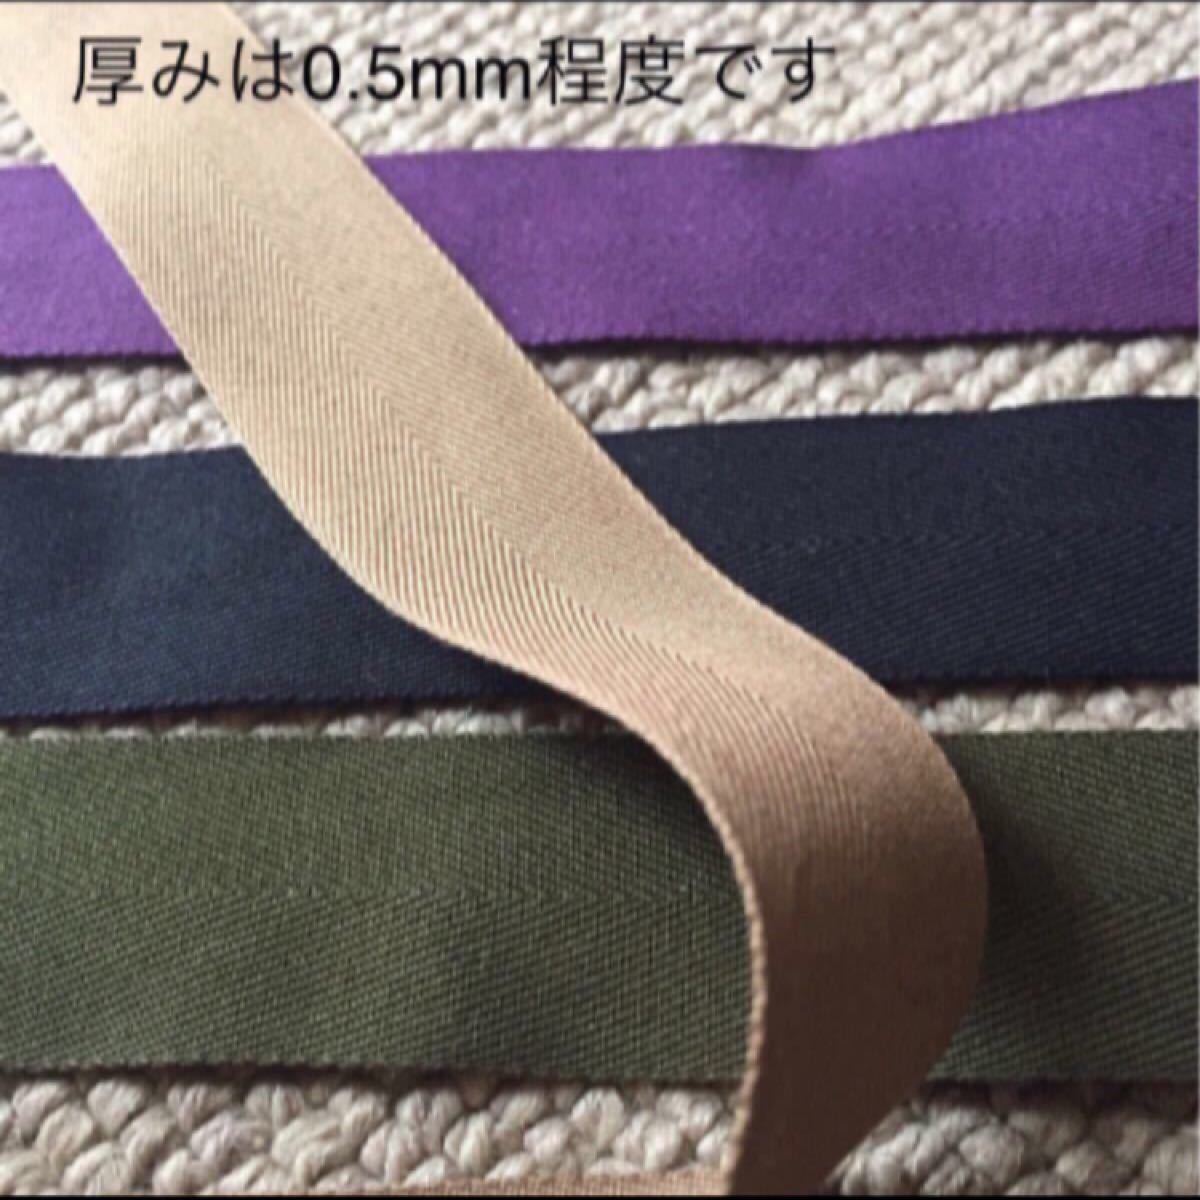 【値下げ】杉綾リボンテープ☆25mm巾 0.5mm厚 10M送料込み 綿 リボン グレープ 紫 ぶどう